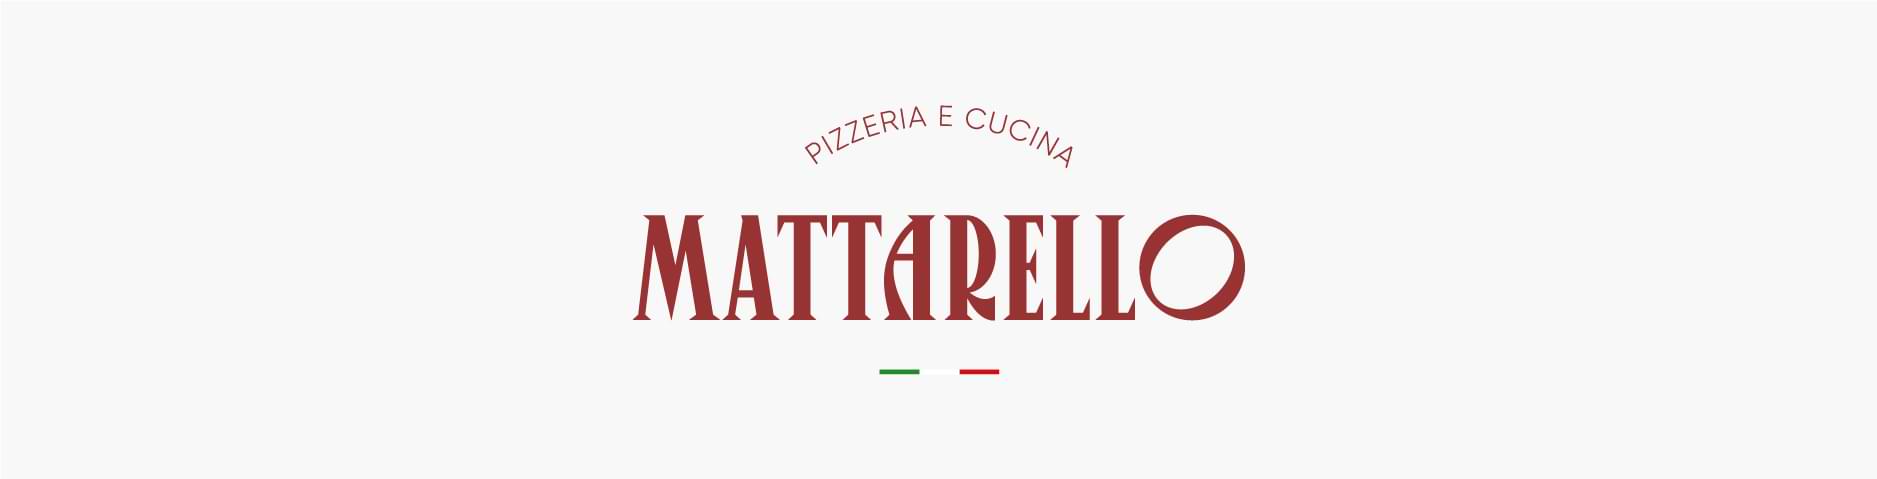 Elaboration du logotype du restaurant italien Mattarello